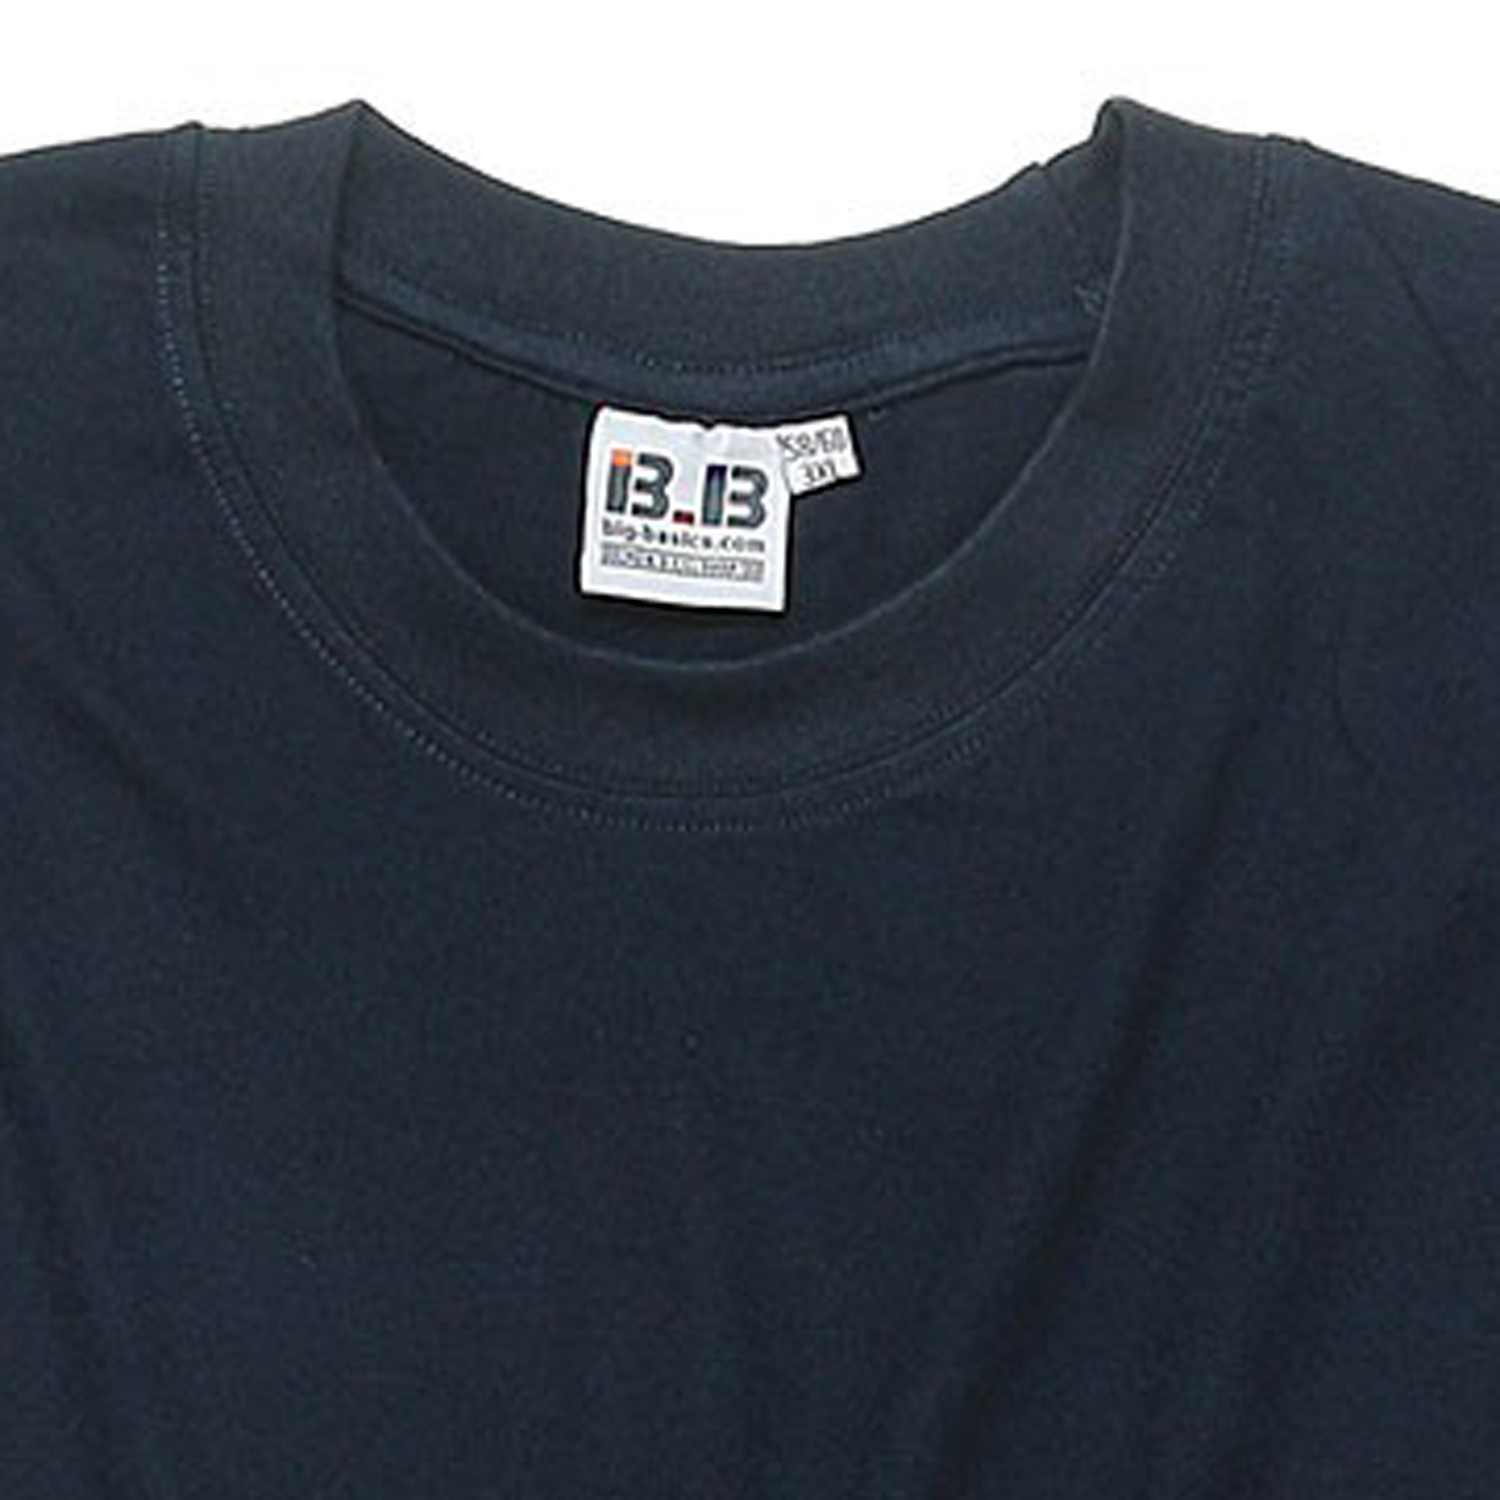 Doppelpack dunkelblaue T-Shirts in Übergrößen bis 8XL by Big-Basics